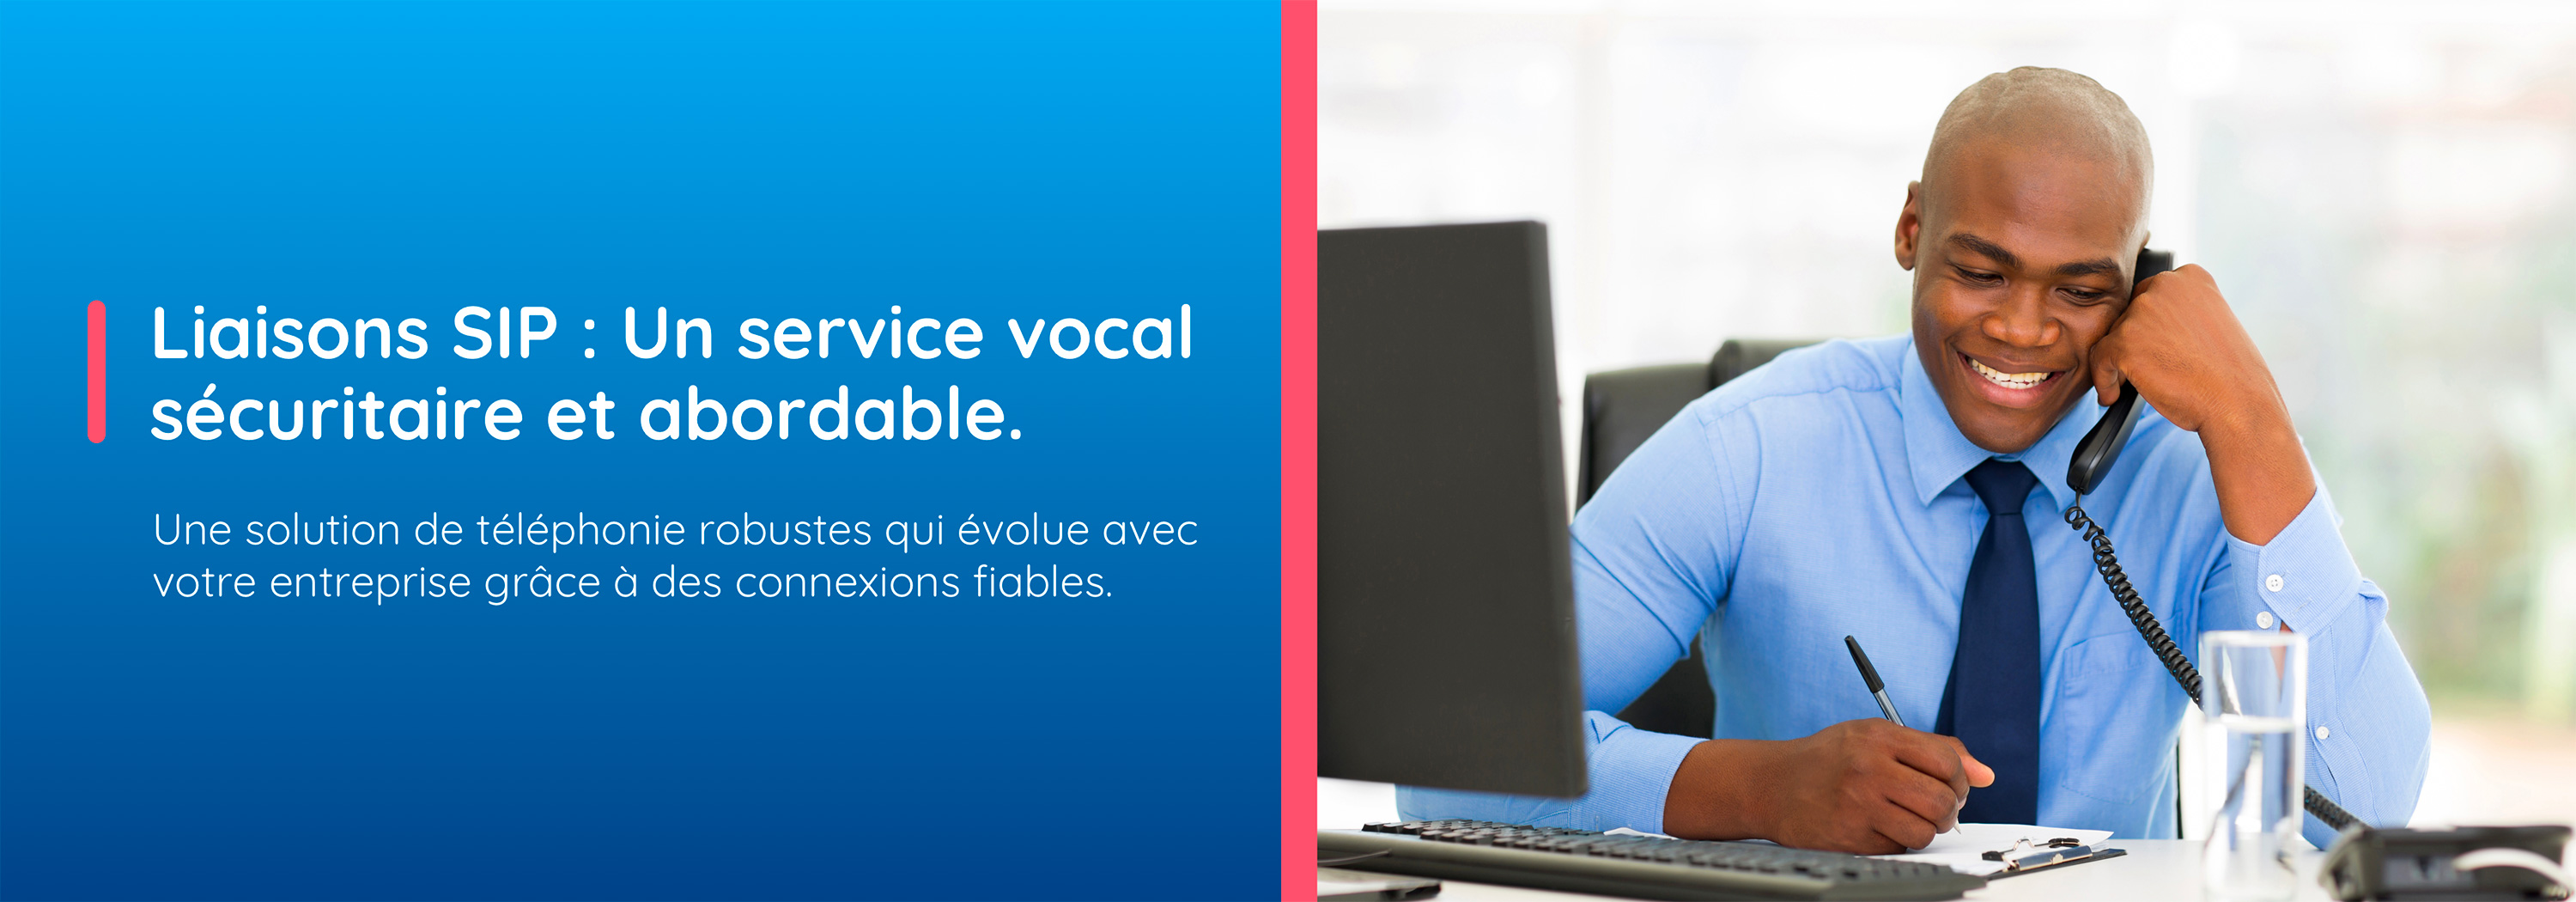 Liaisons SIP : Un service vocal sécuritaire et abordable. Une solution de téléphonie robustes qui évolue avec votre entreprise grâce à des connexions fiables.